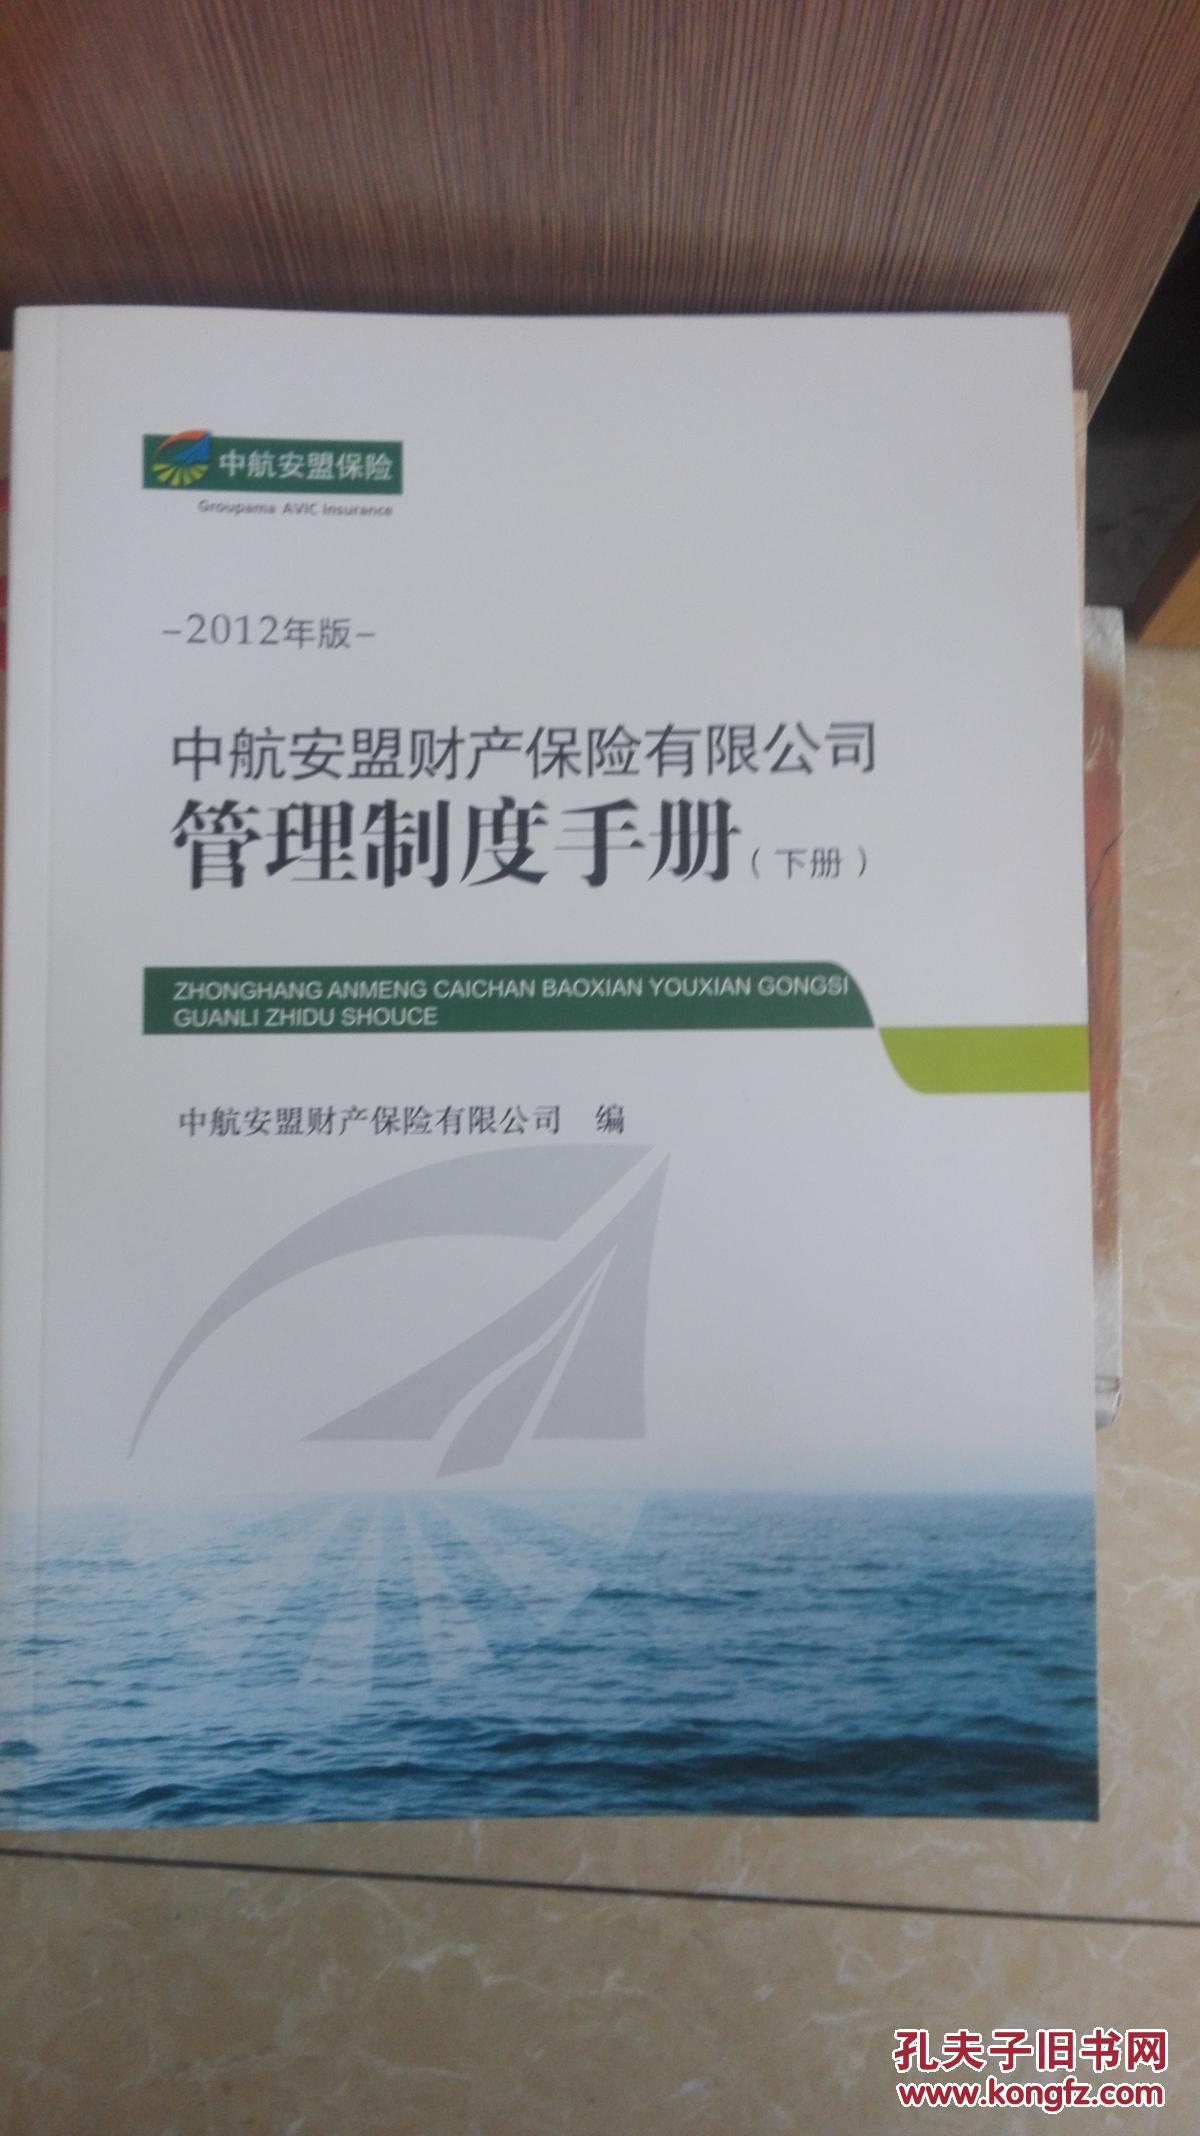 中航安盟财产保险有限公司管理制度手册(2012(上下册